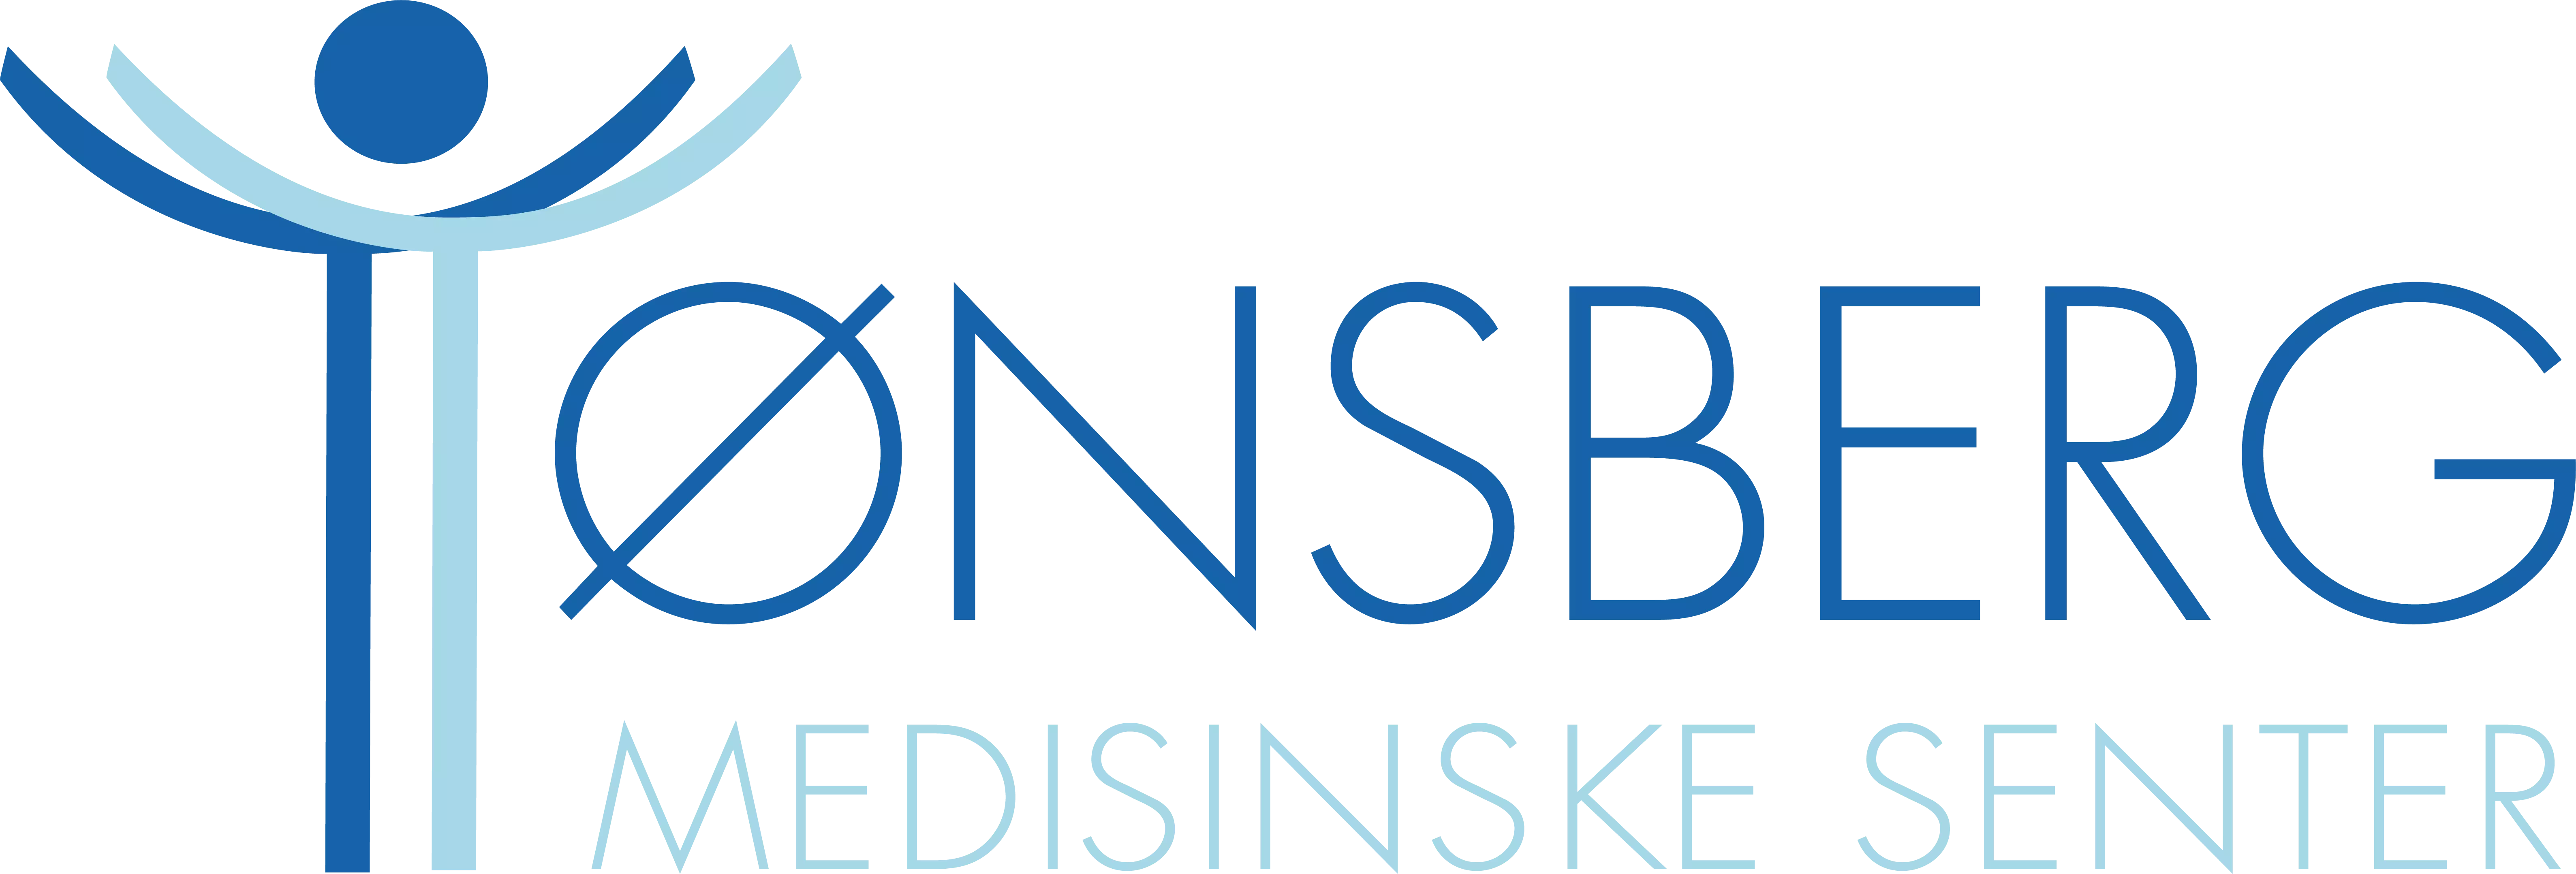 Tønsberg Medisinske Senter logo